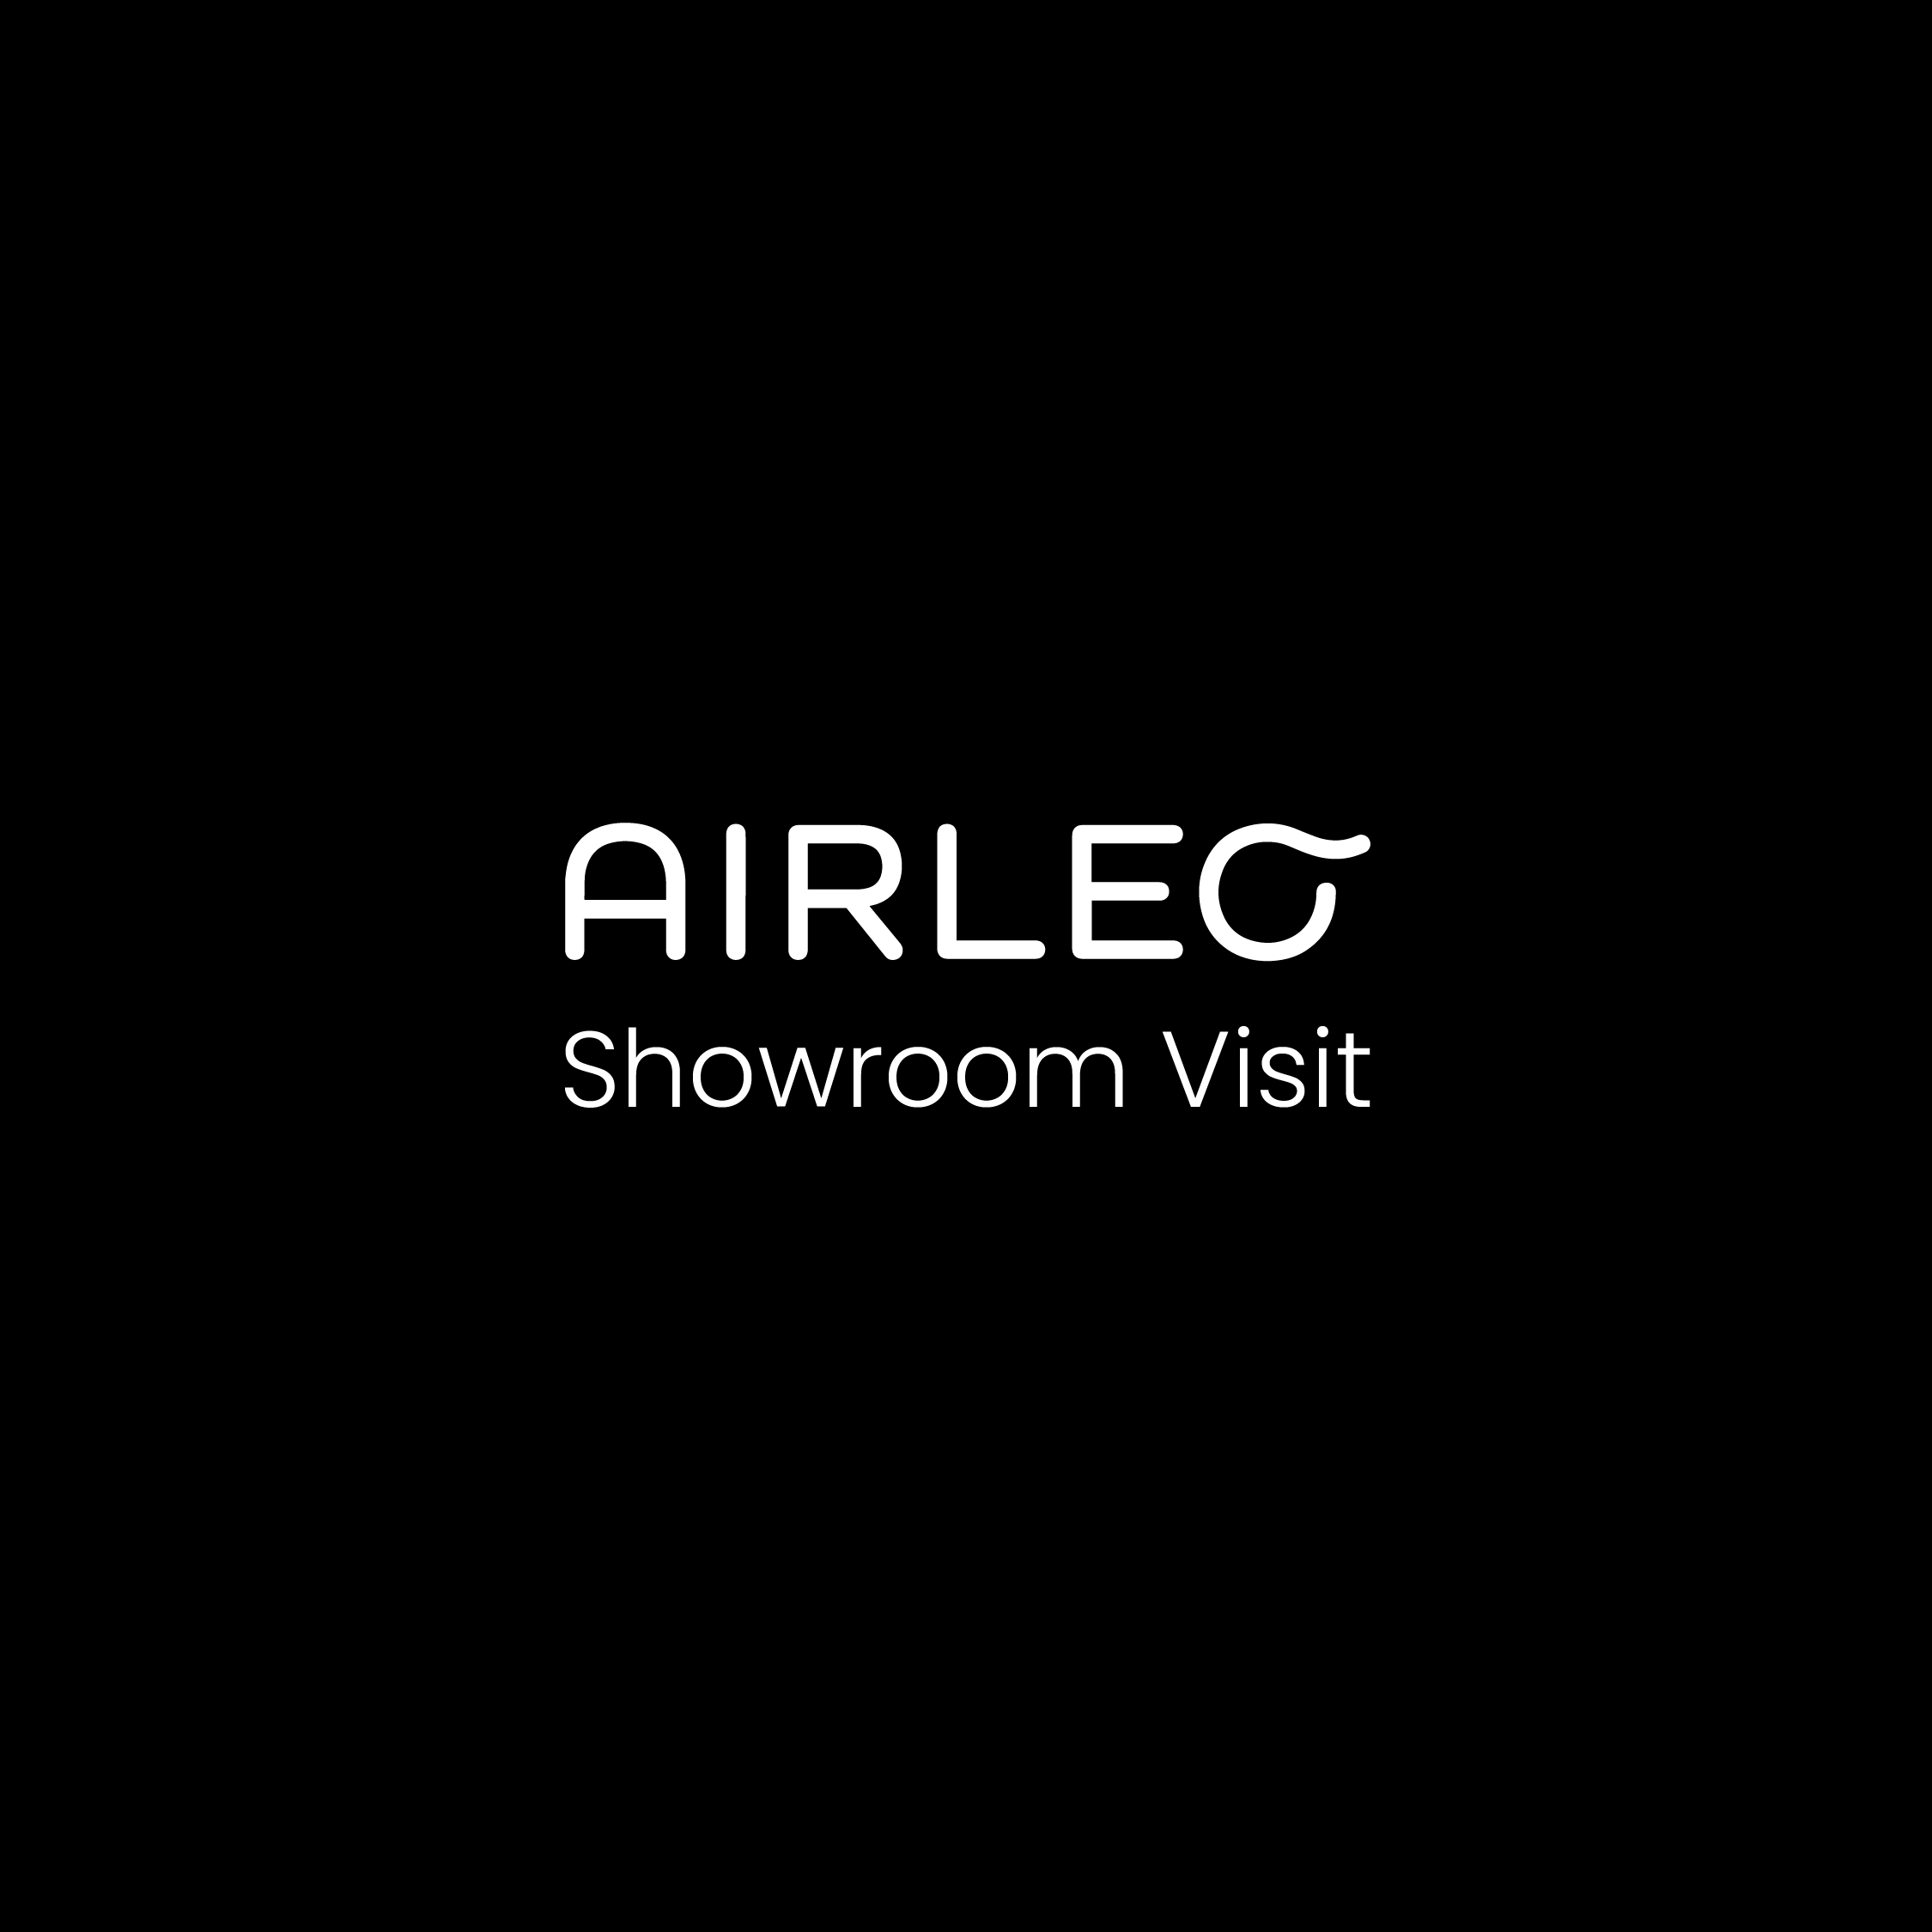 AIRLEO Showroom Visit